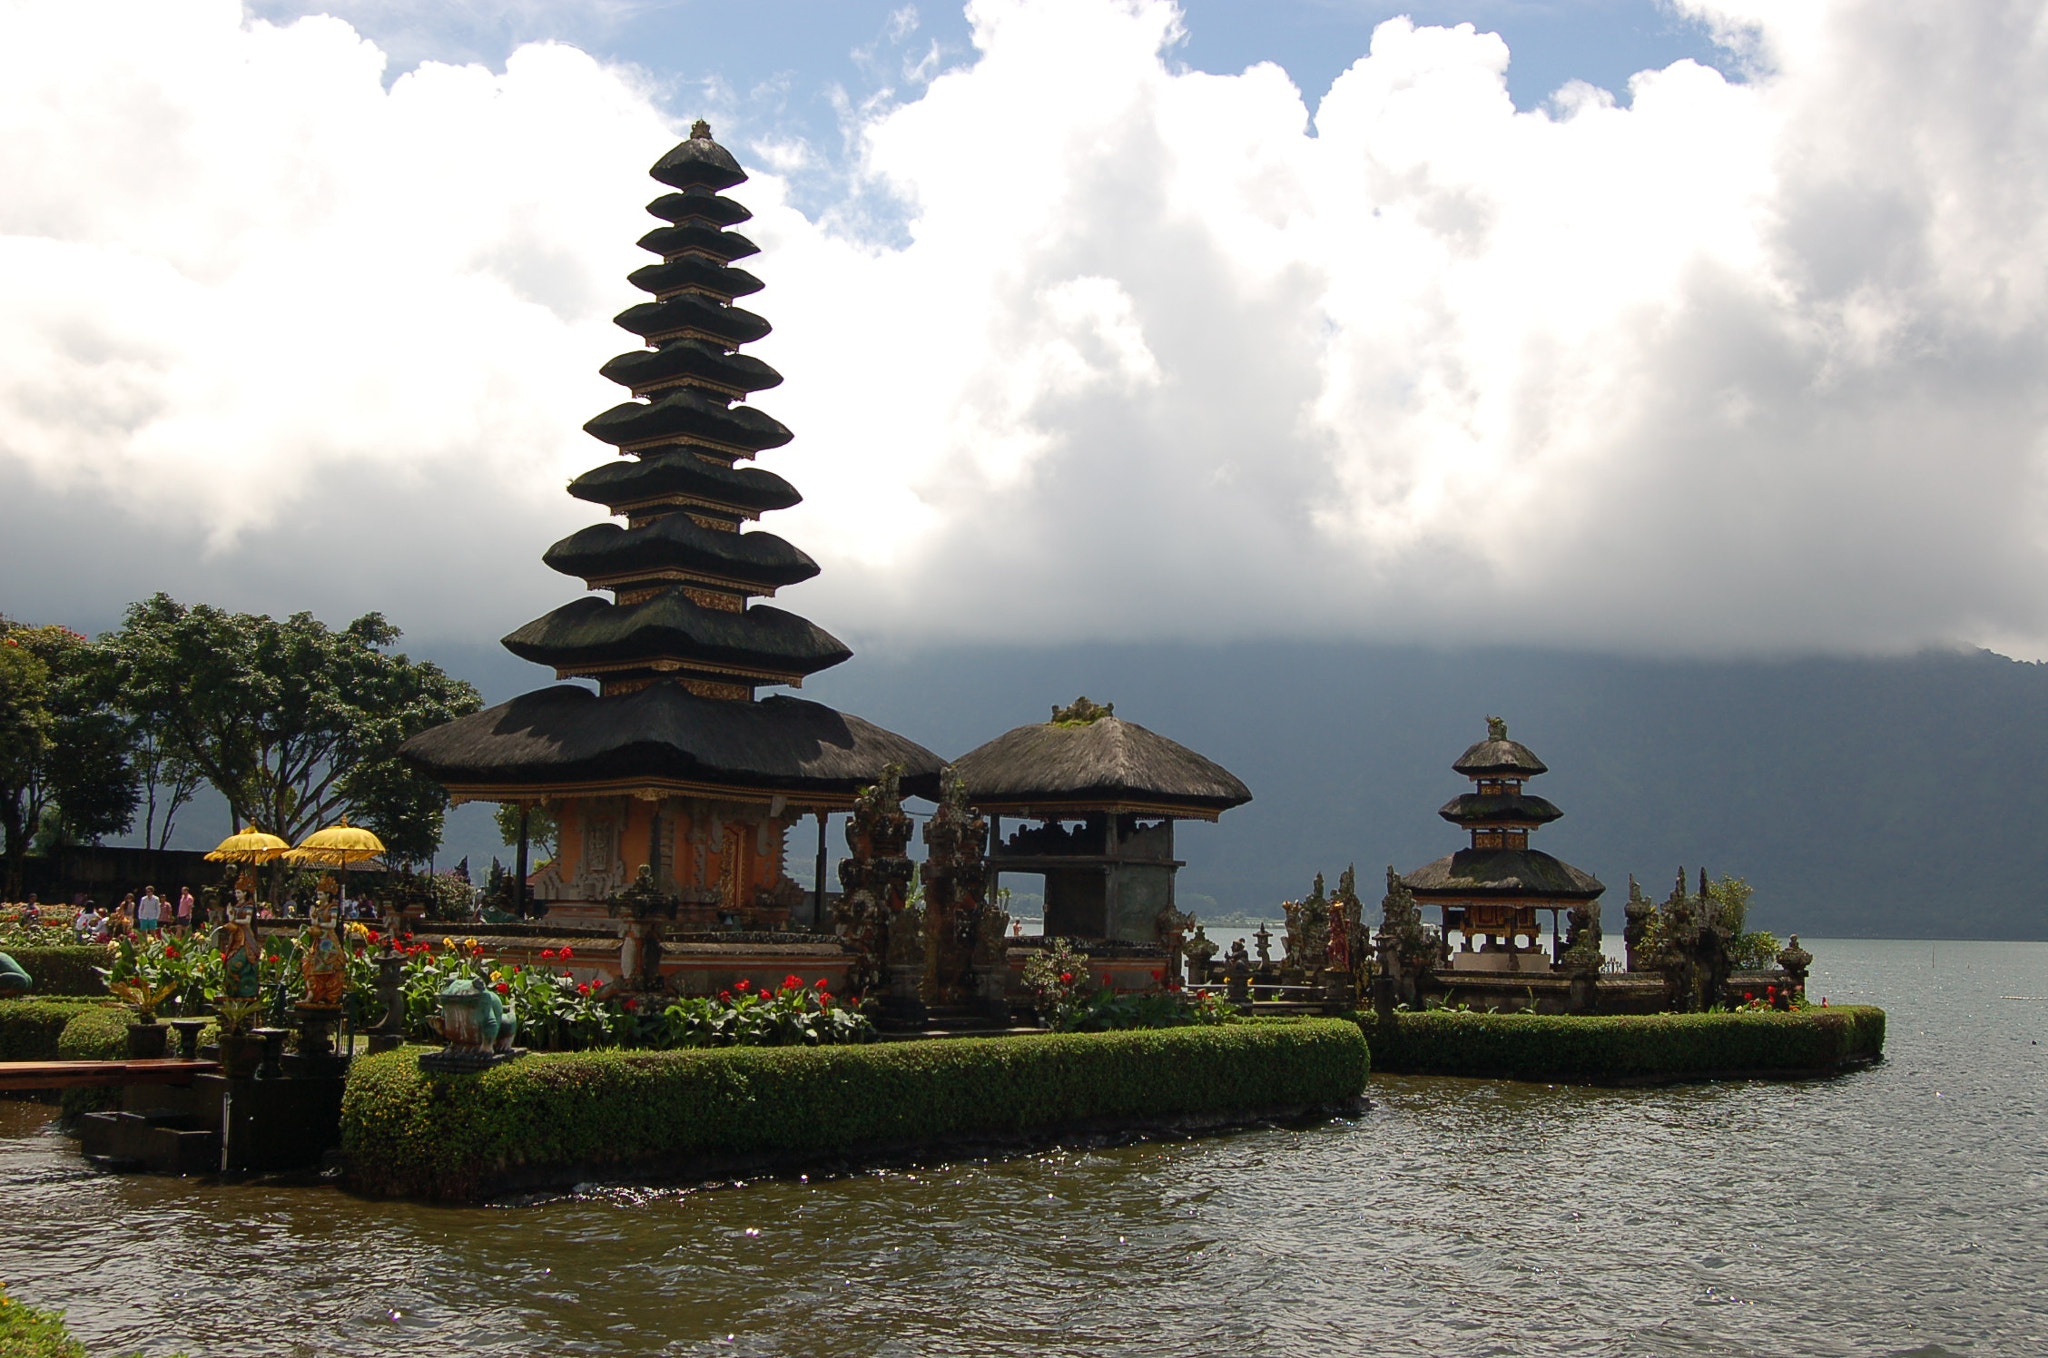 AF-S DX Zoom-Nikkor 18-55mm f/3.5-5.6G ED sample photo. Bali lake temple photography